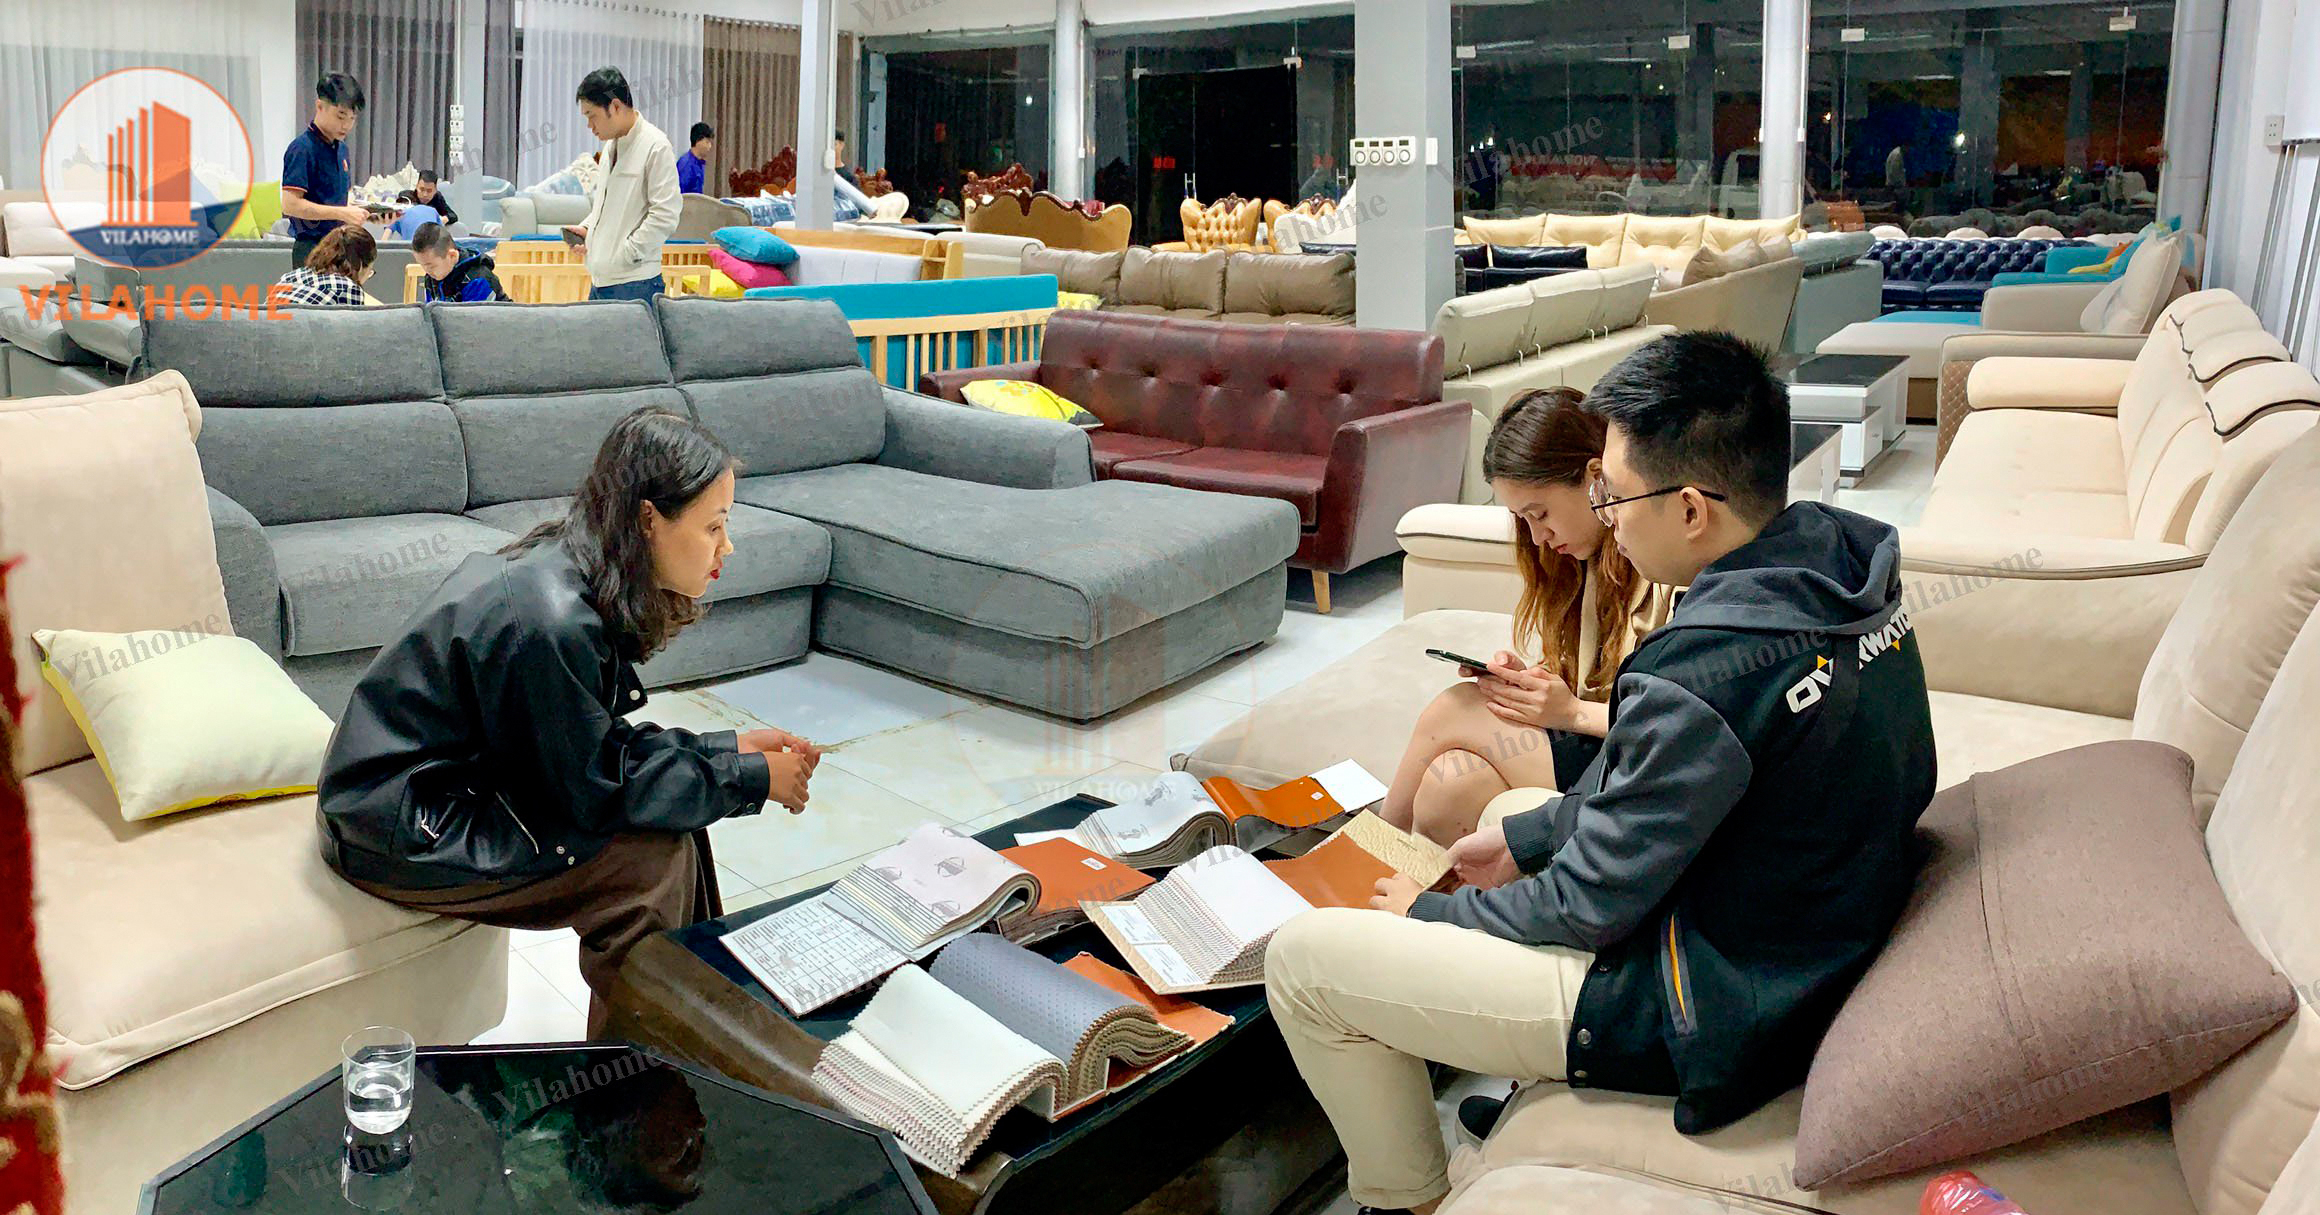 Địa chỉ cửa háng showroom bán những mẫu ghế sofa đơn giản tại Hà Nội